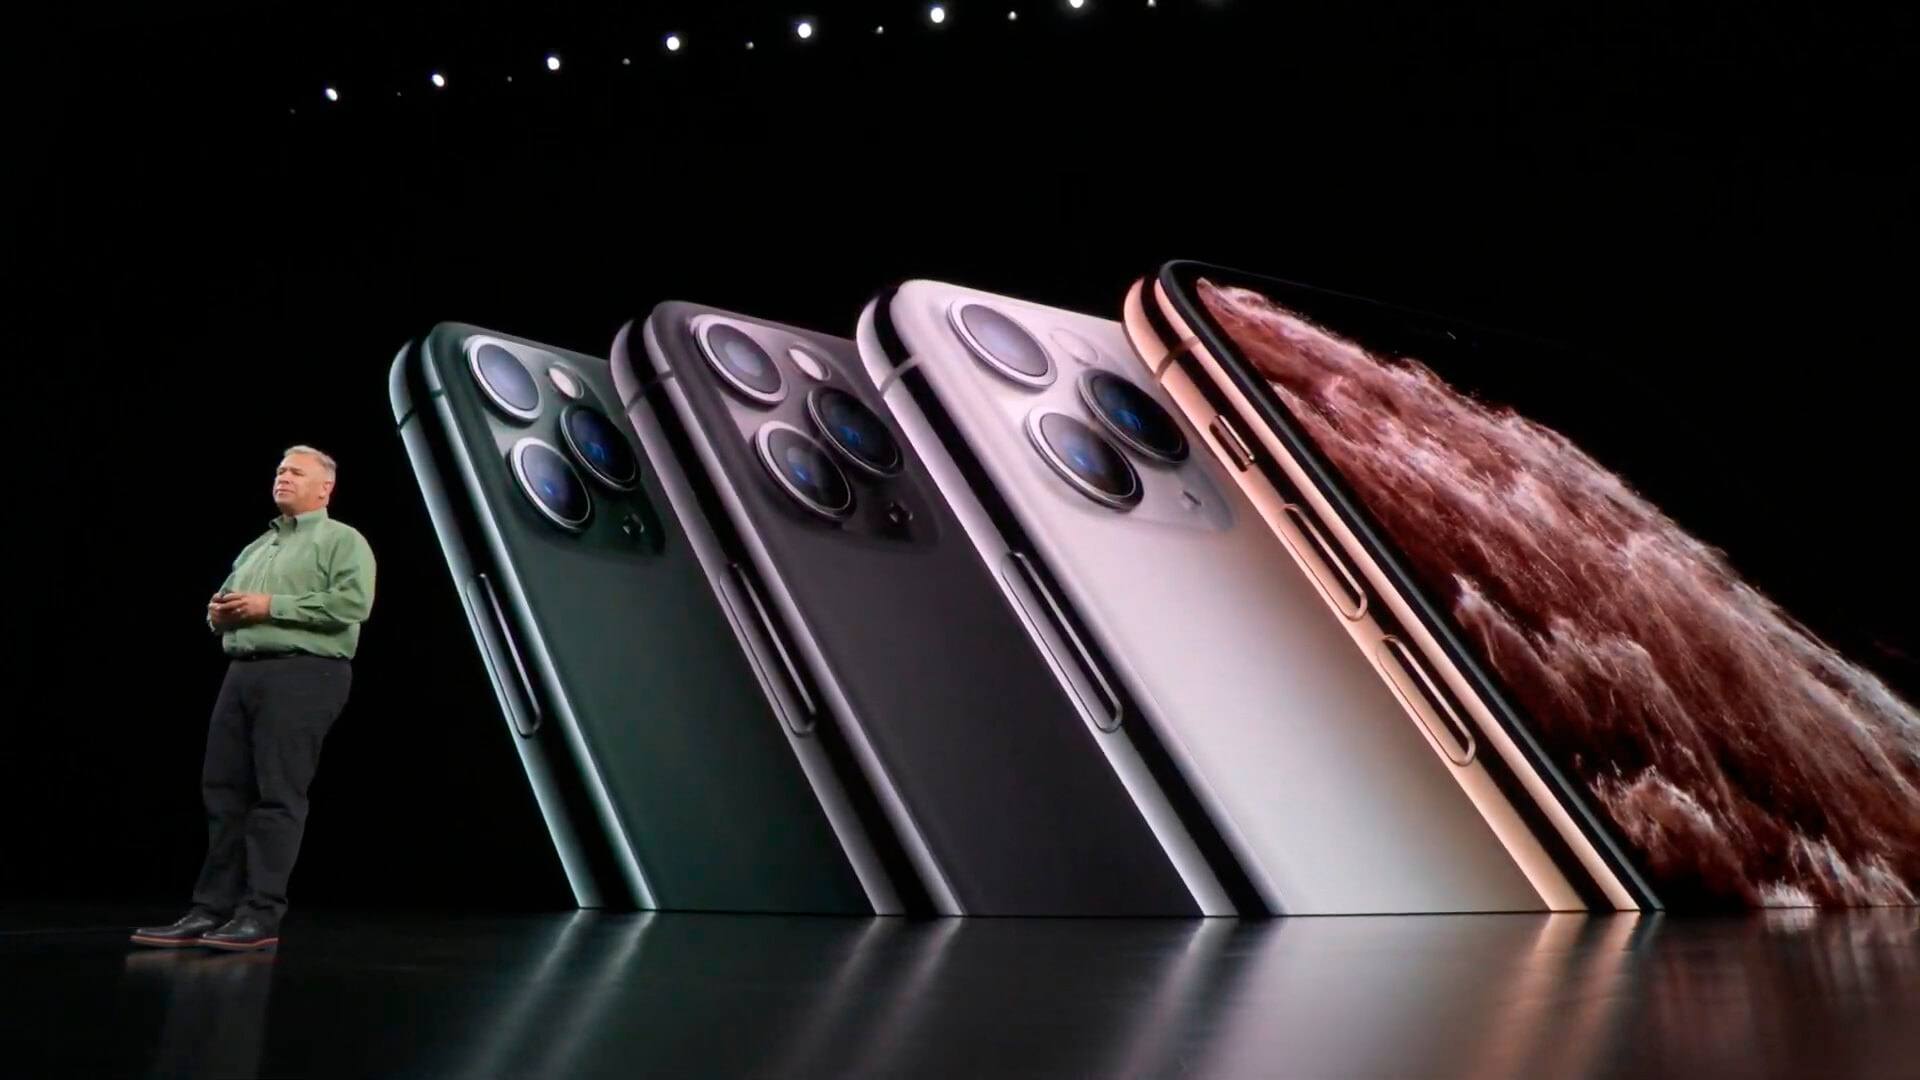 وكذلك الحال بالنسبة لأجهزة iPhone 11 و iPhone 11 Pro الجديدة للتنافس مع Android 5